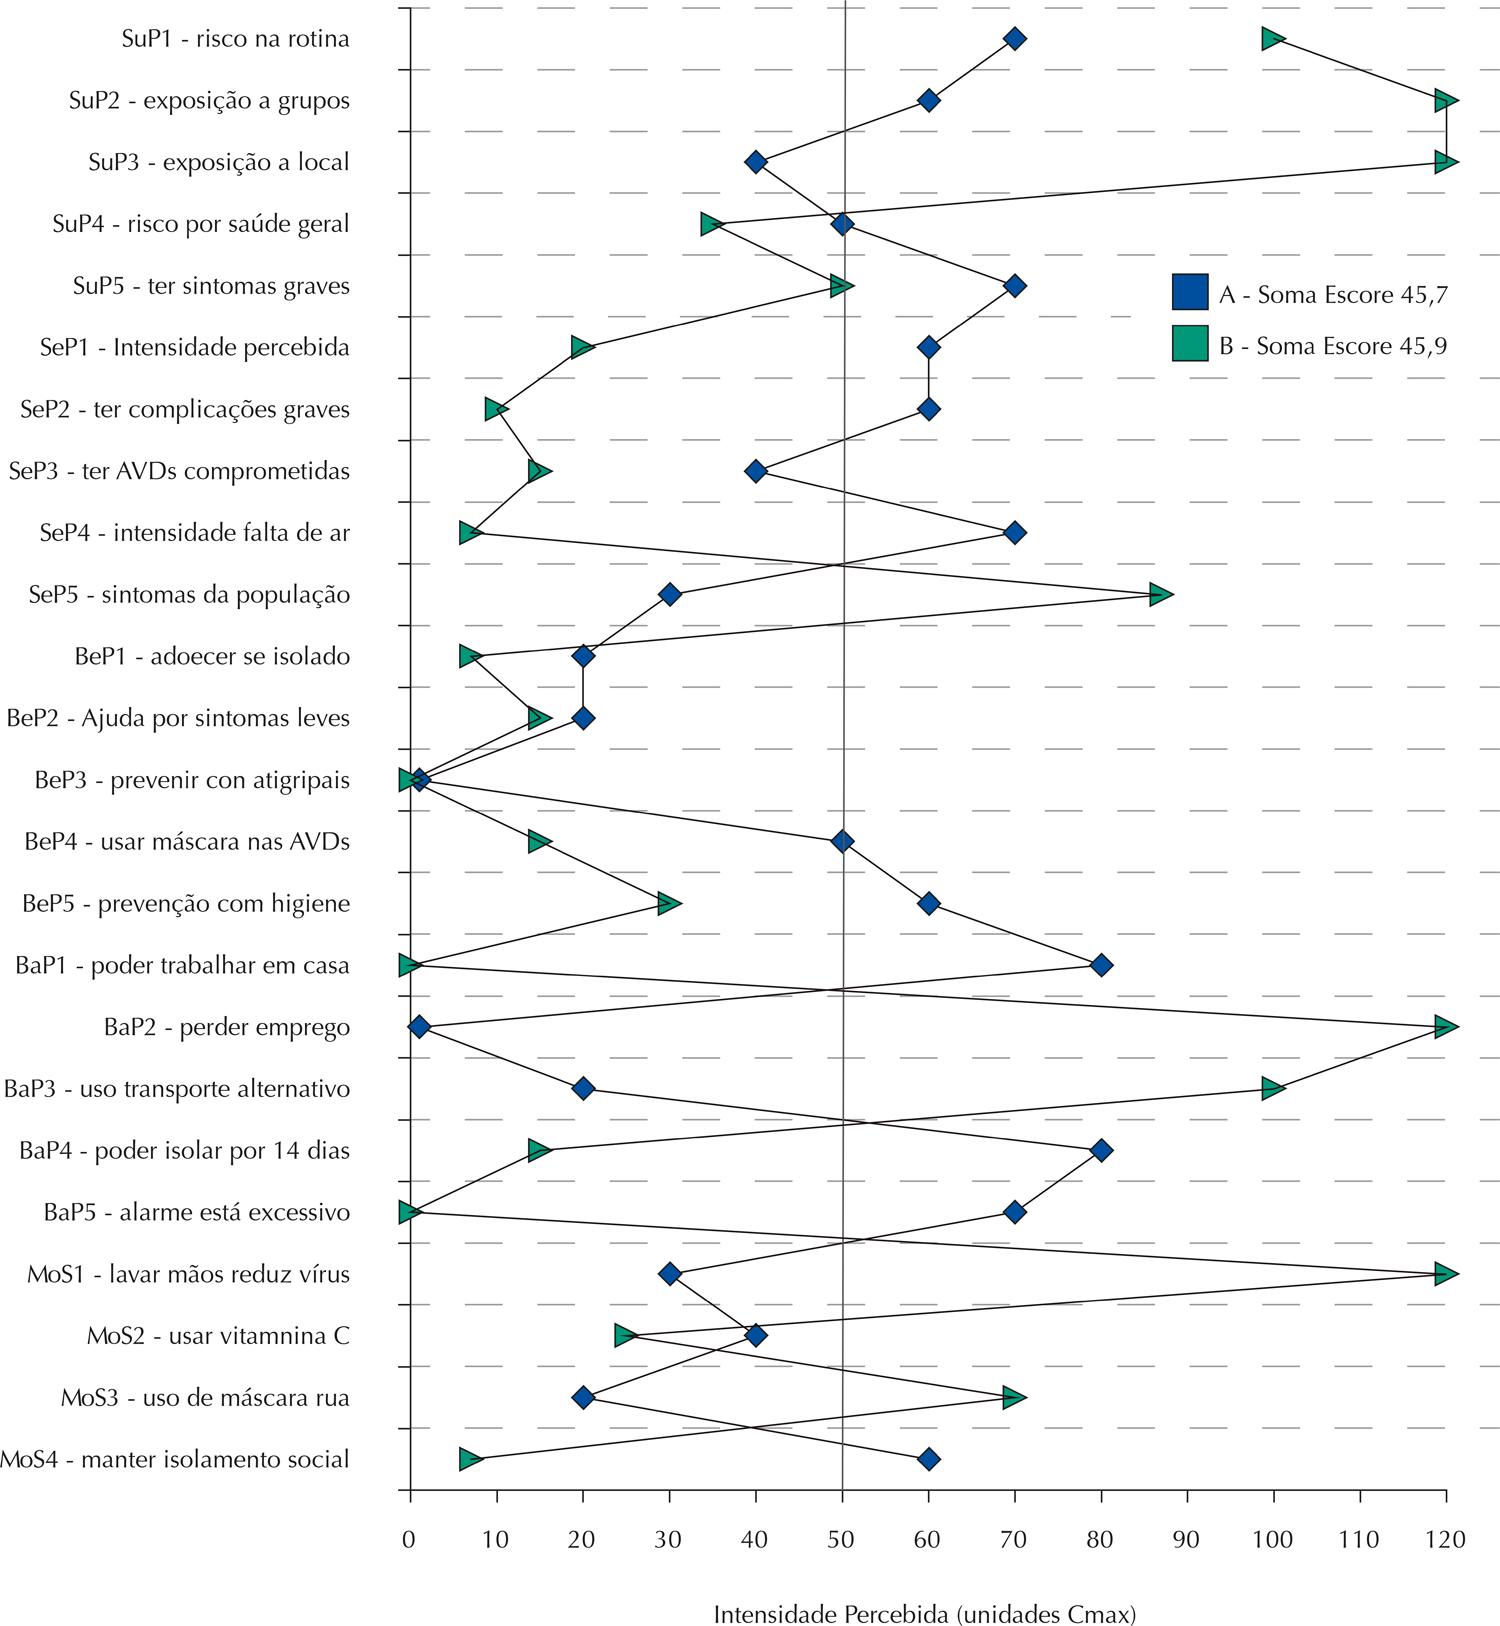 Gráfico compara as respostas de dois participantes que teriam o mesmo escore numa escala qualitativa